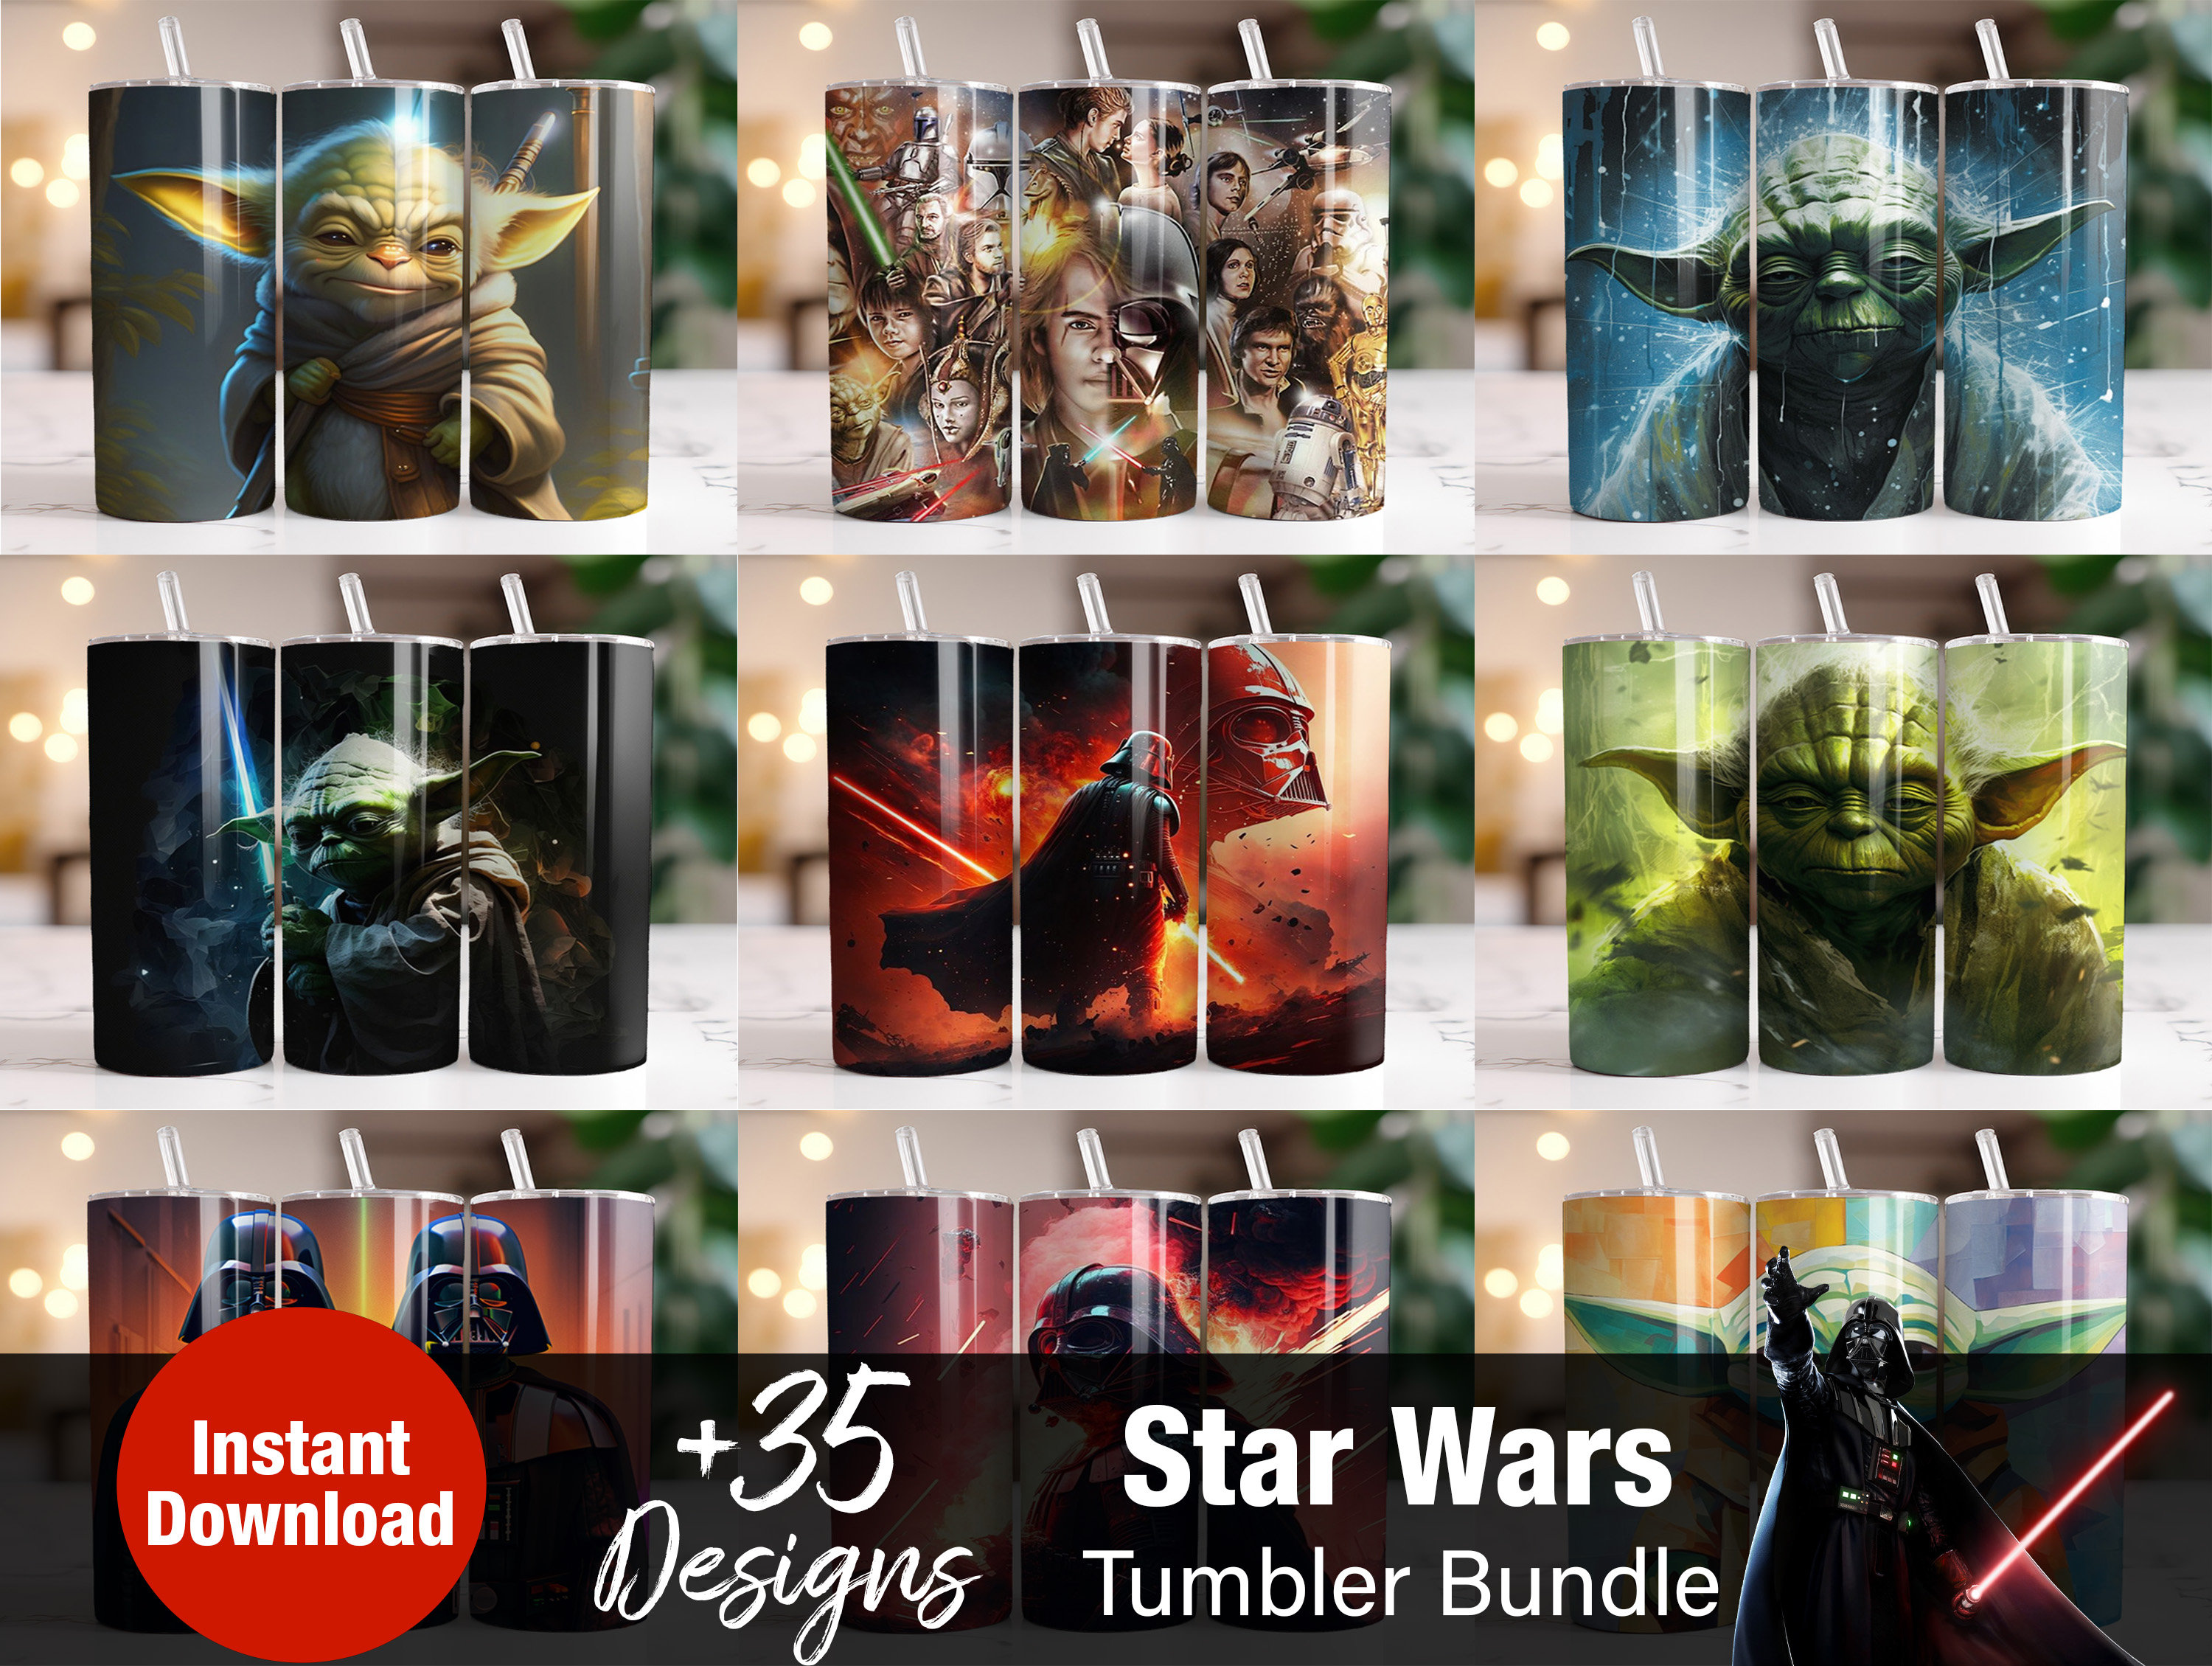 12+ Star Wars Tumbler PNG, Star Wars Designs, Baby Yoda Tumbler File, –  Drabundlesvg